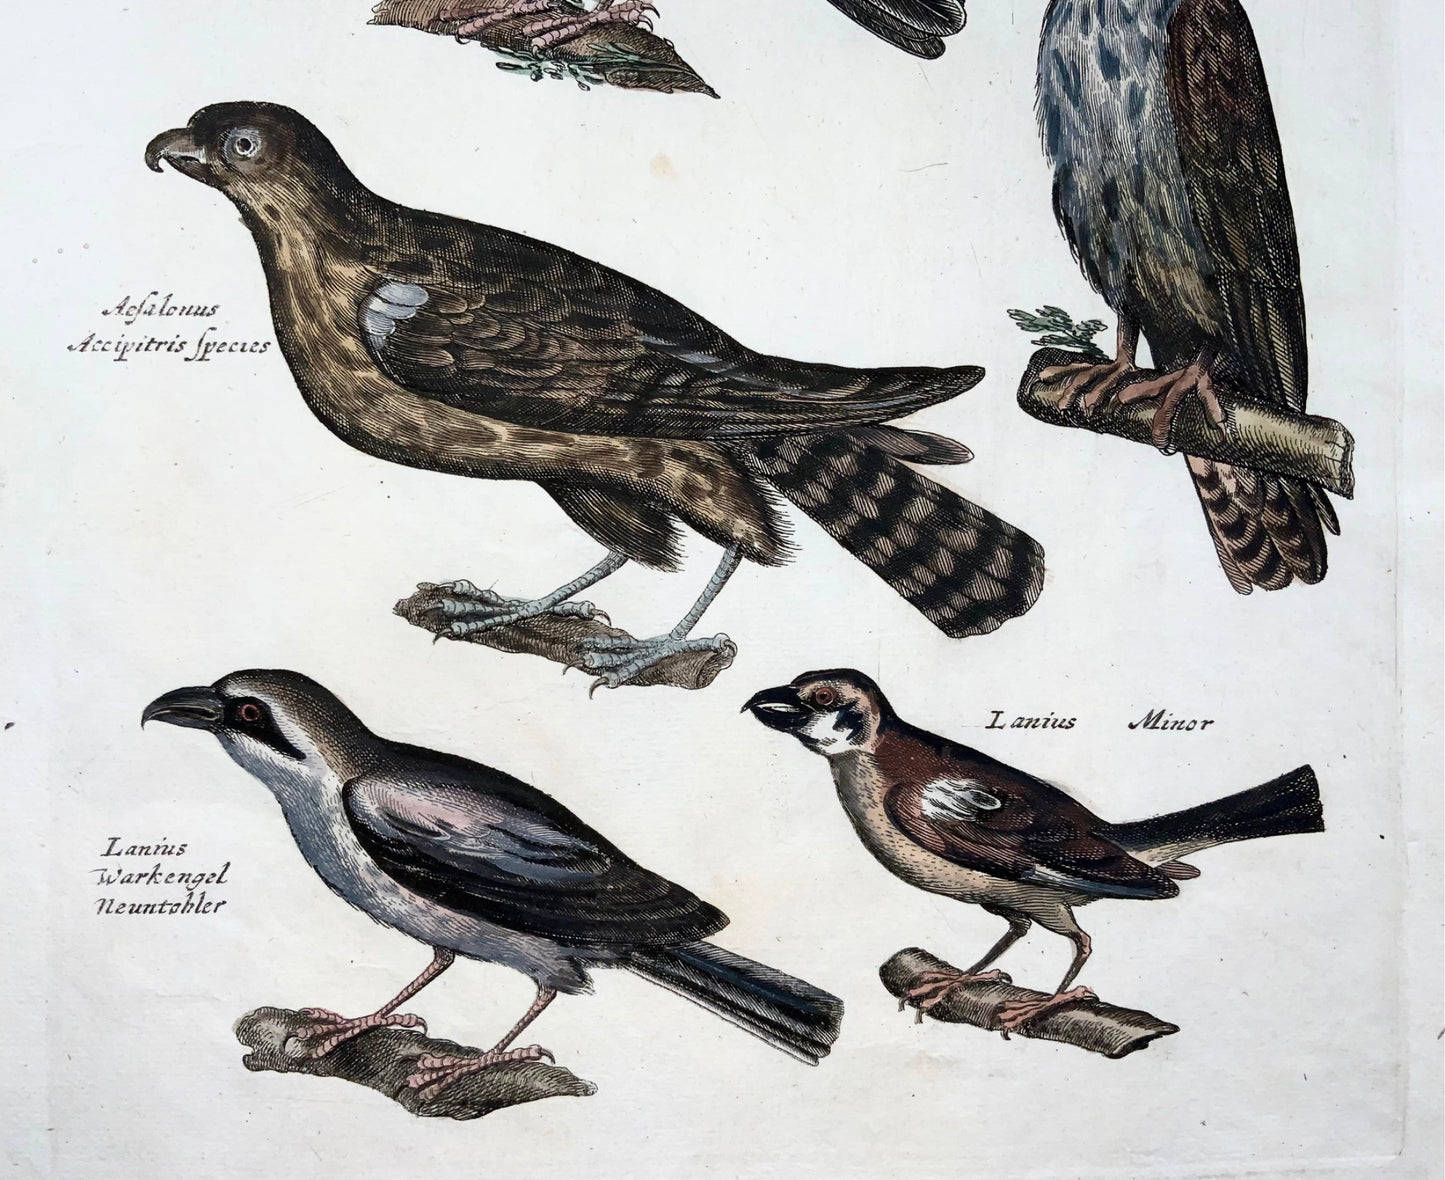 1657 Coucou, Faucon, Hobby, Pie-grièche, oiseaux, Merian, folio, gravure colorée à la main